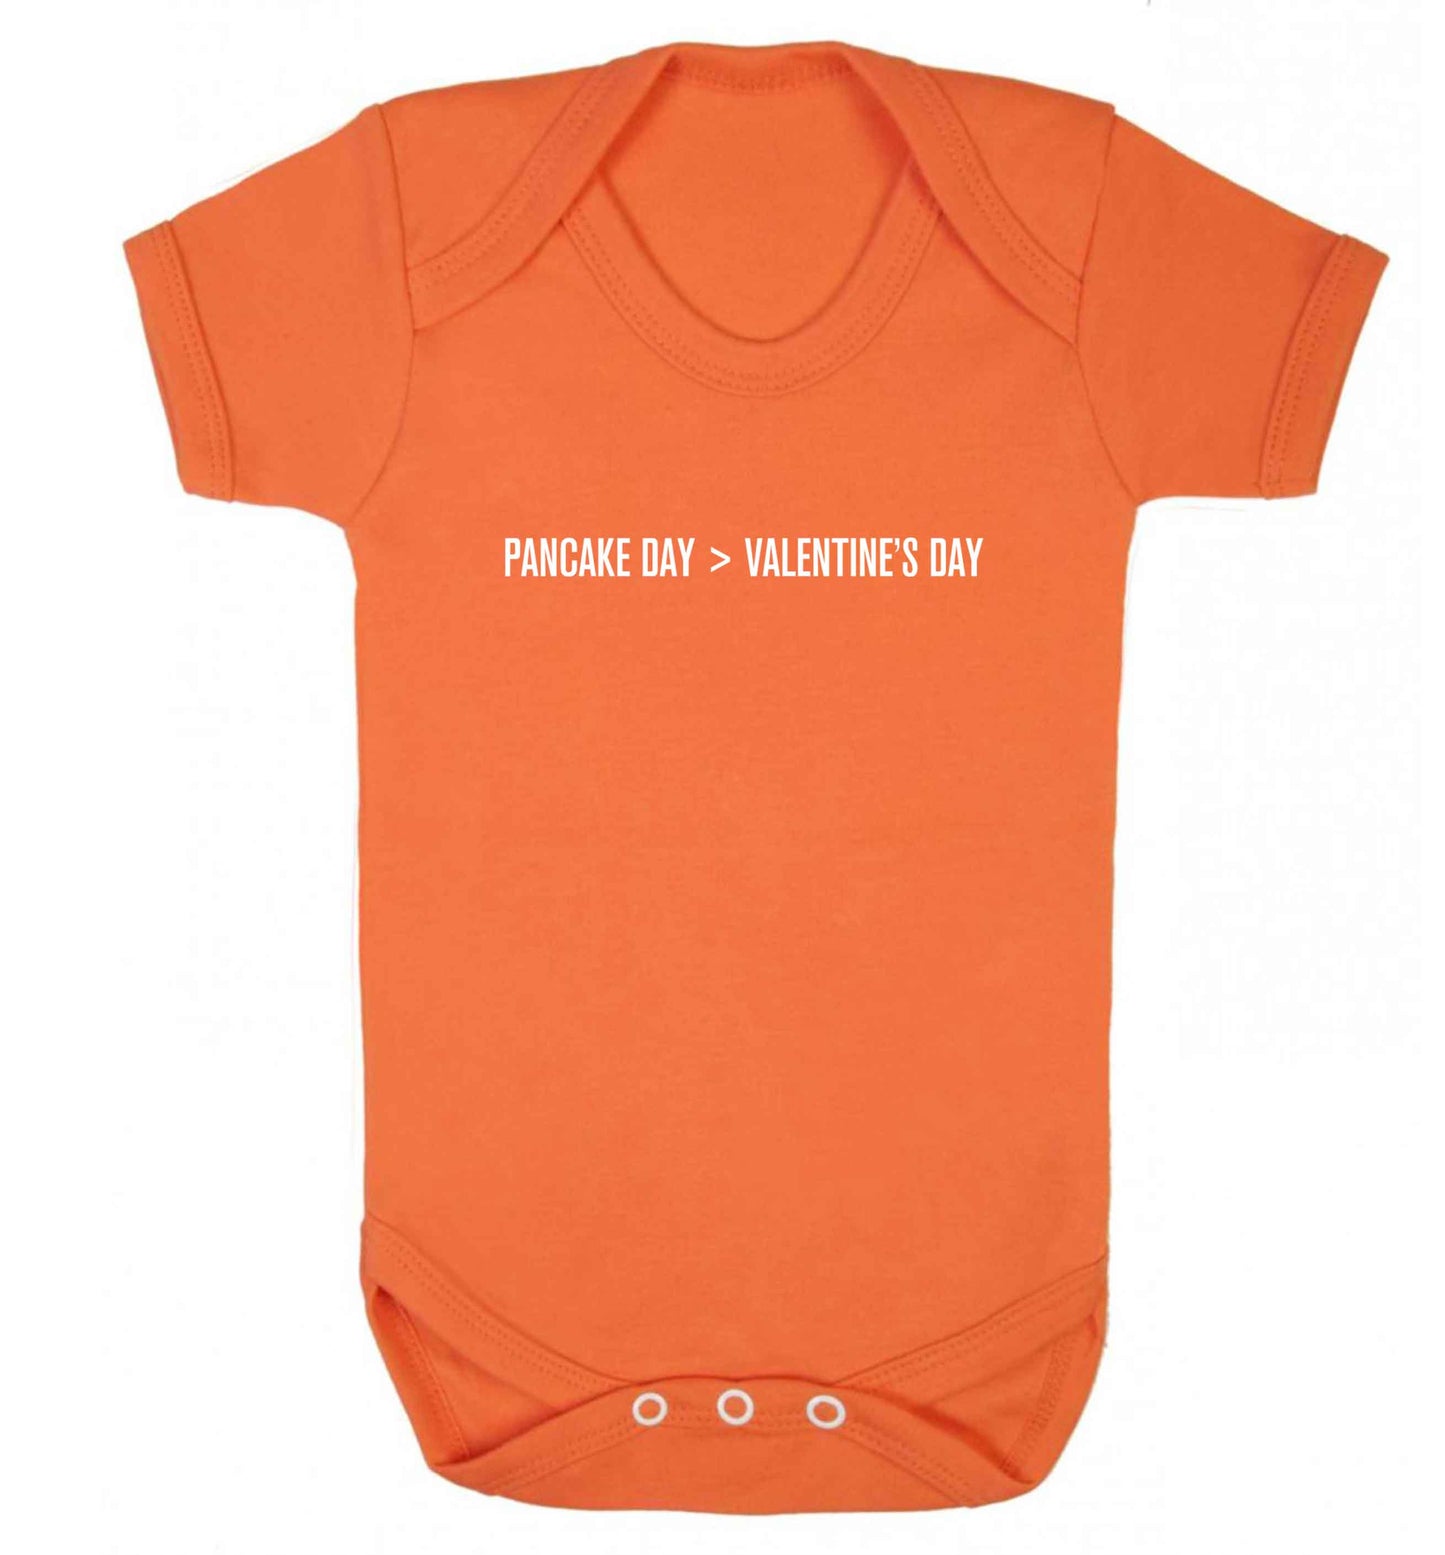 Pancake day > valentines day baby vest orange 18-24 months